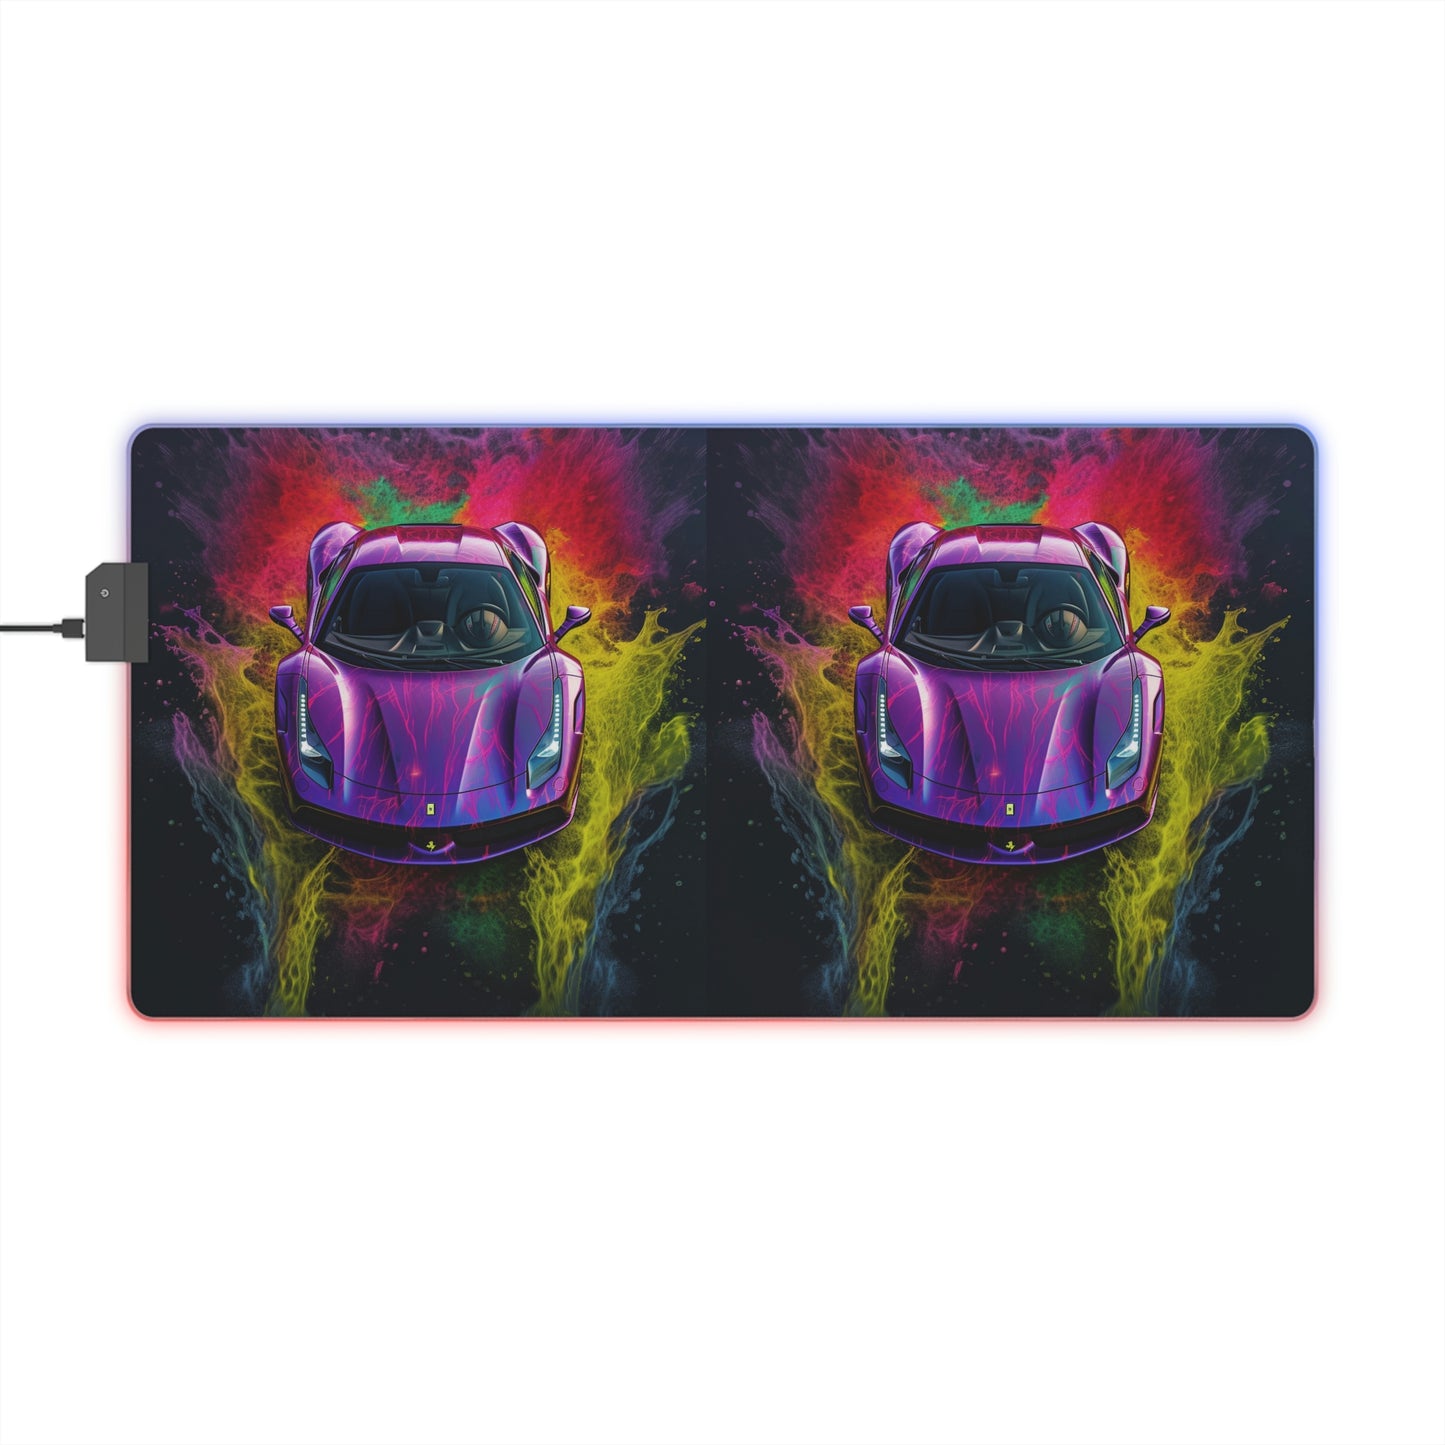 LED Gaming Mouse Pad Ferrari Water 3